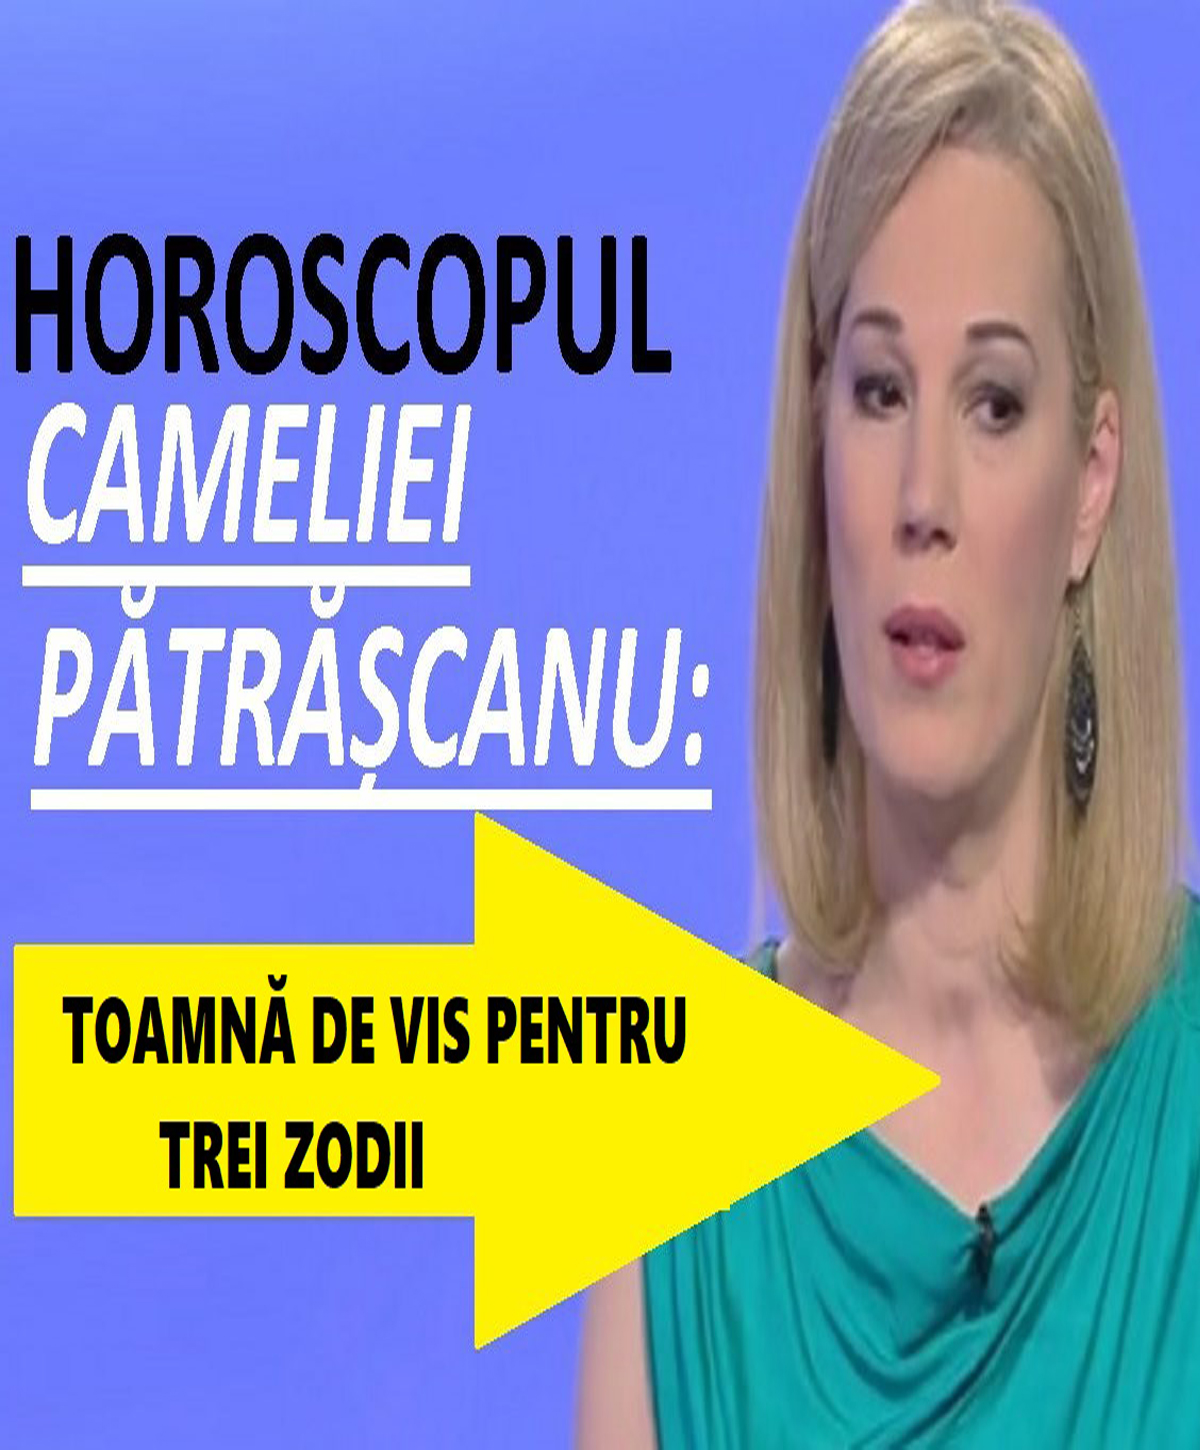 Horoscop Camelia Pătrășcanu pentru TOAMNA lui 2019. Din septembrie începe fericirea pentru 3 zodii